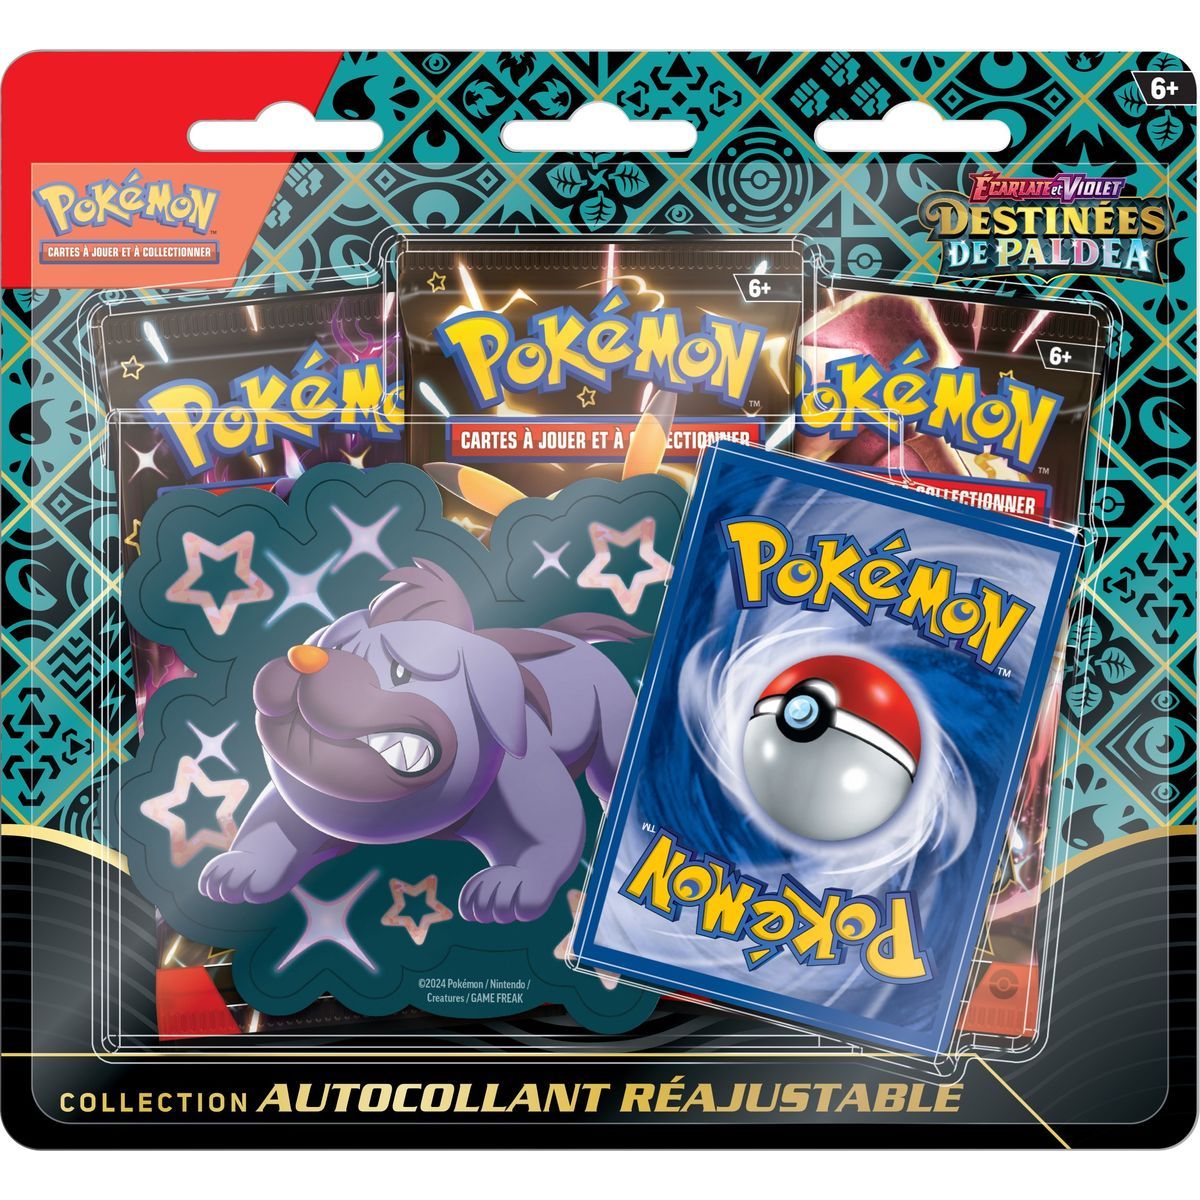 Pokémon - Coffret Collection Autocollant réajustable - Ecarlate et Violet - Destinées de Paldea Grondogue -[SV04.5 - EV04.5] - FR